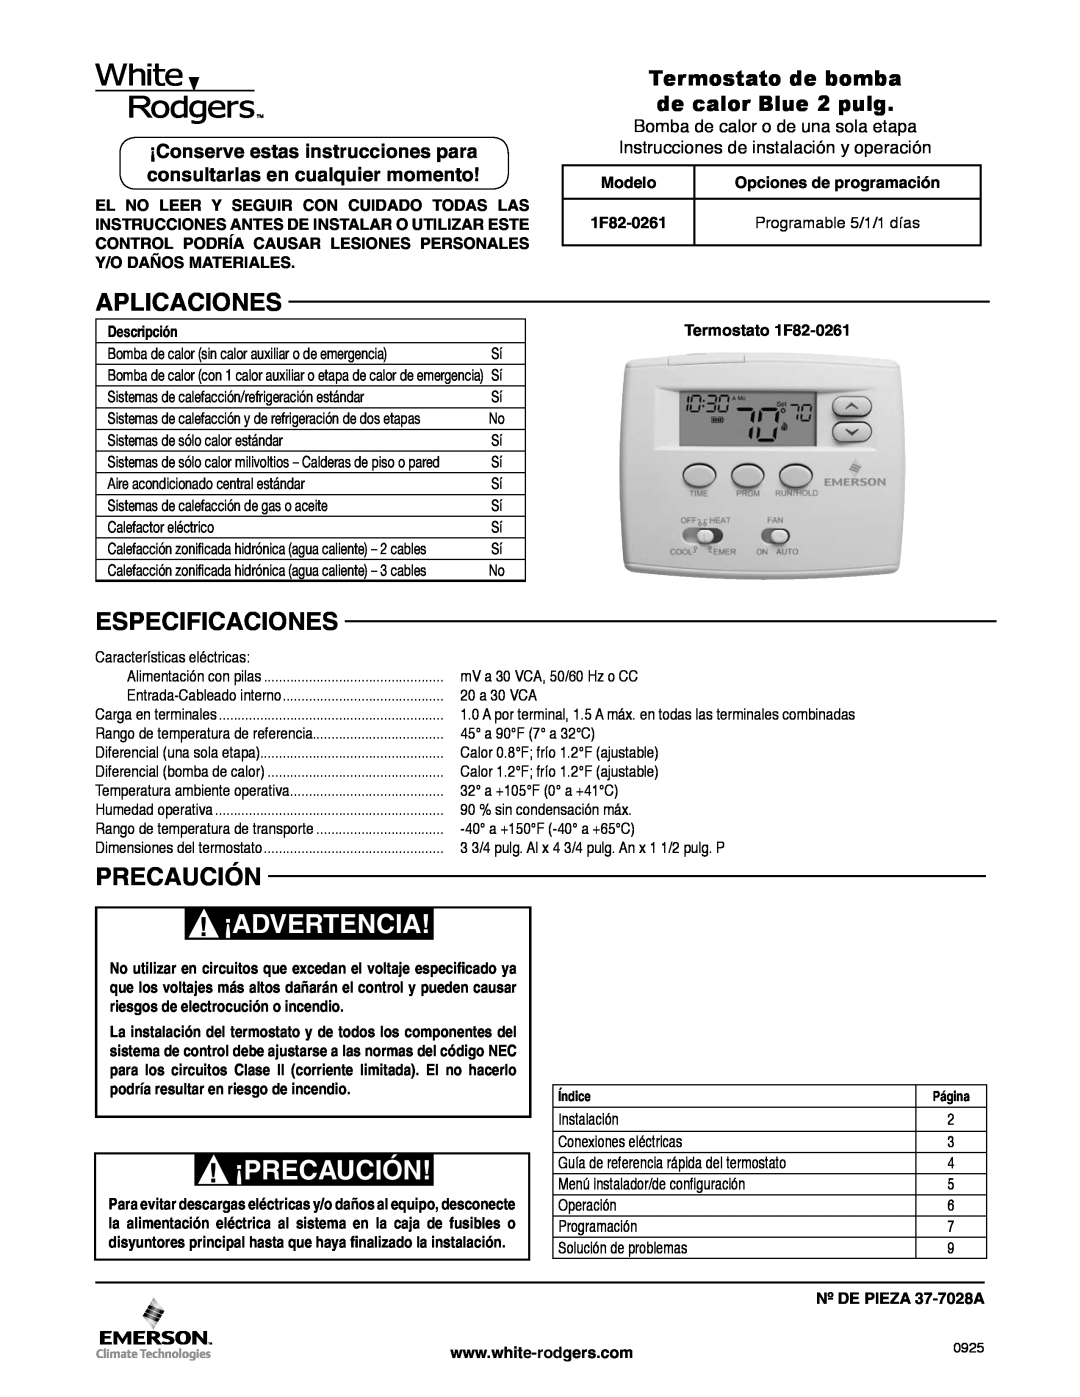 White Rodgers 1F82-0261 manual ¡Advertencia, ¡Precaución, Aplicaciones, Especificaciones, Modelo, Opciones de programación 